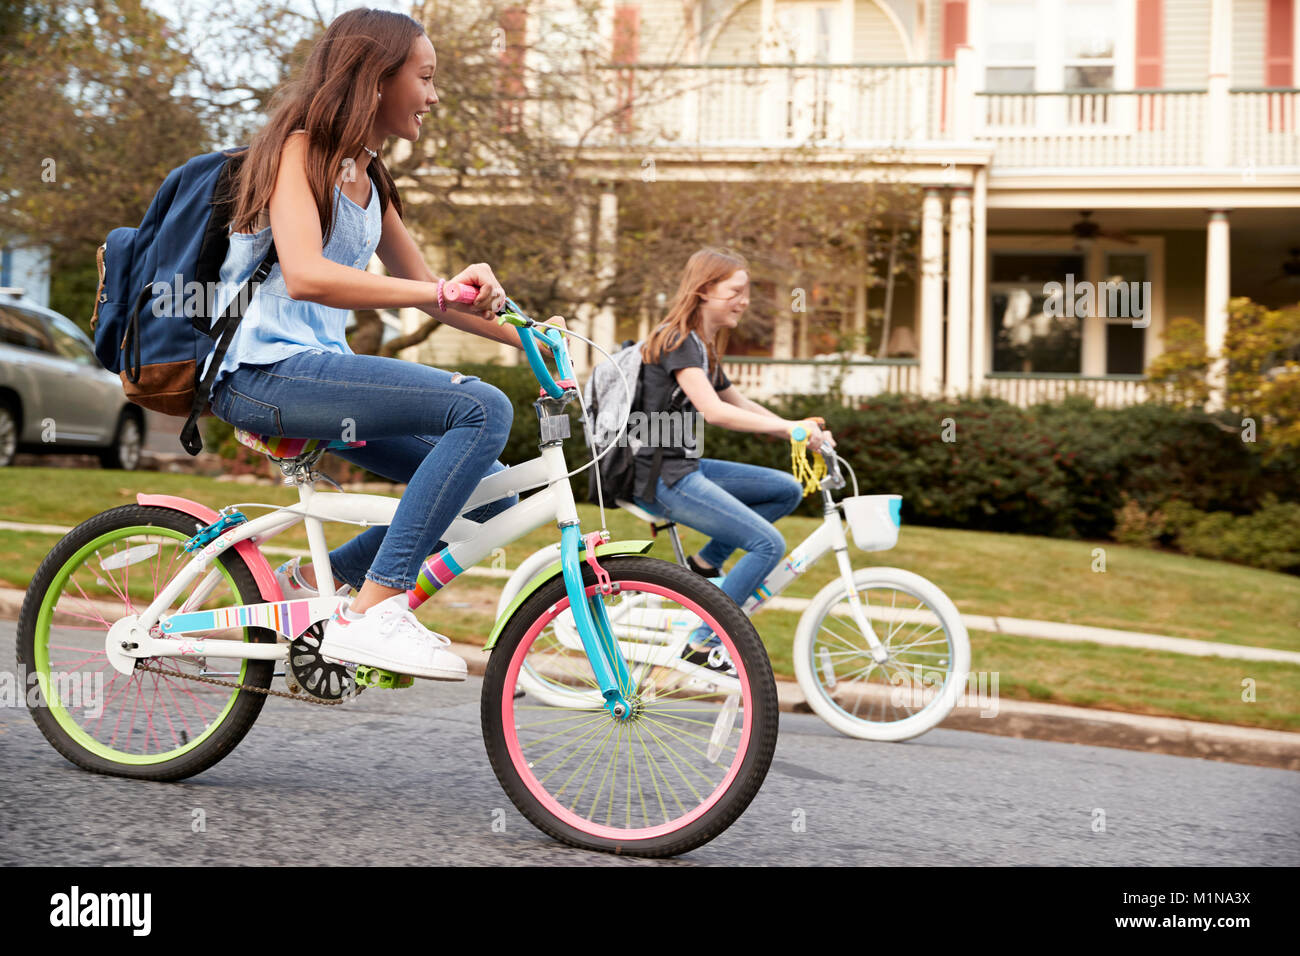 Deux adolescentes riding bikes en vue du côté de la rue, Close up Banque D'Images